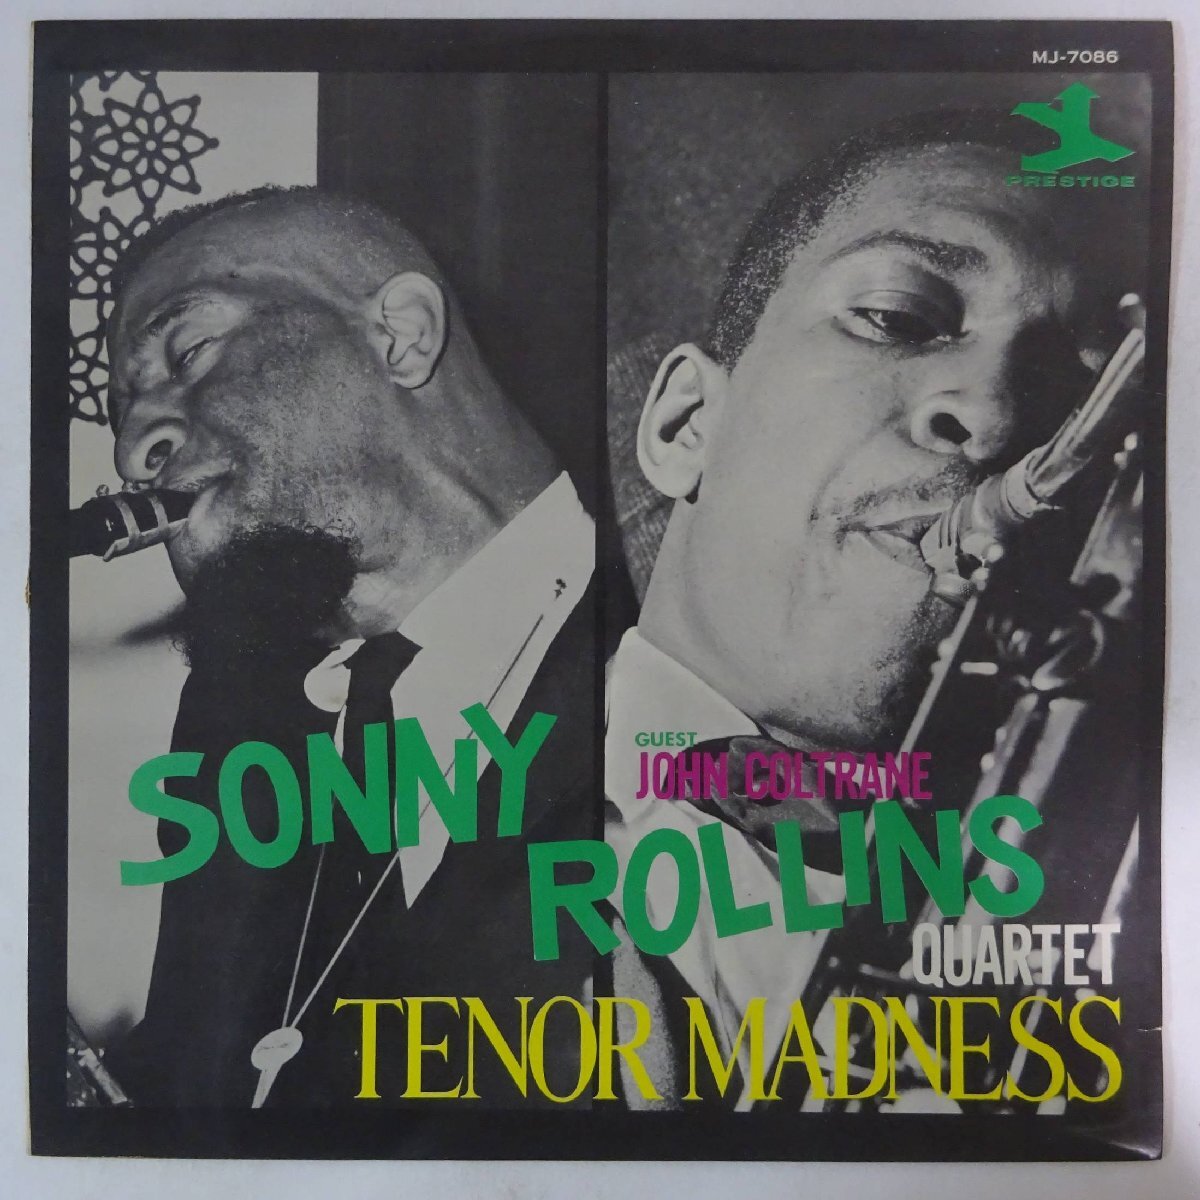 11184317;【国内盤/Prestige/ペラジャケ】Sonny Rollins Quartet Guest John Coltrane / Tenor Madness ロリンズ対コルトレーンの画像1